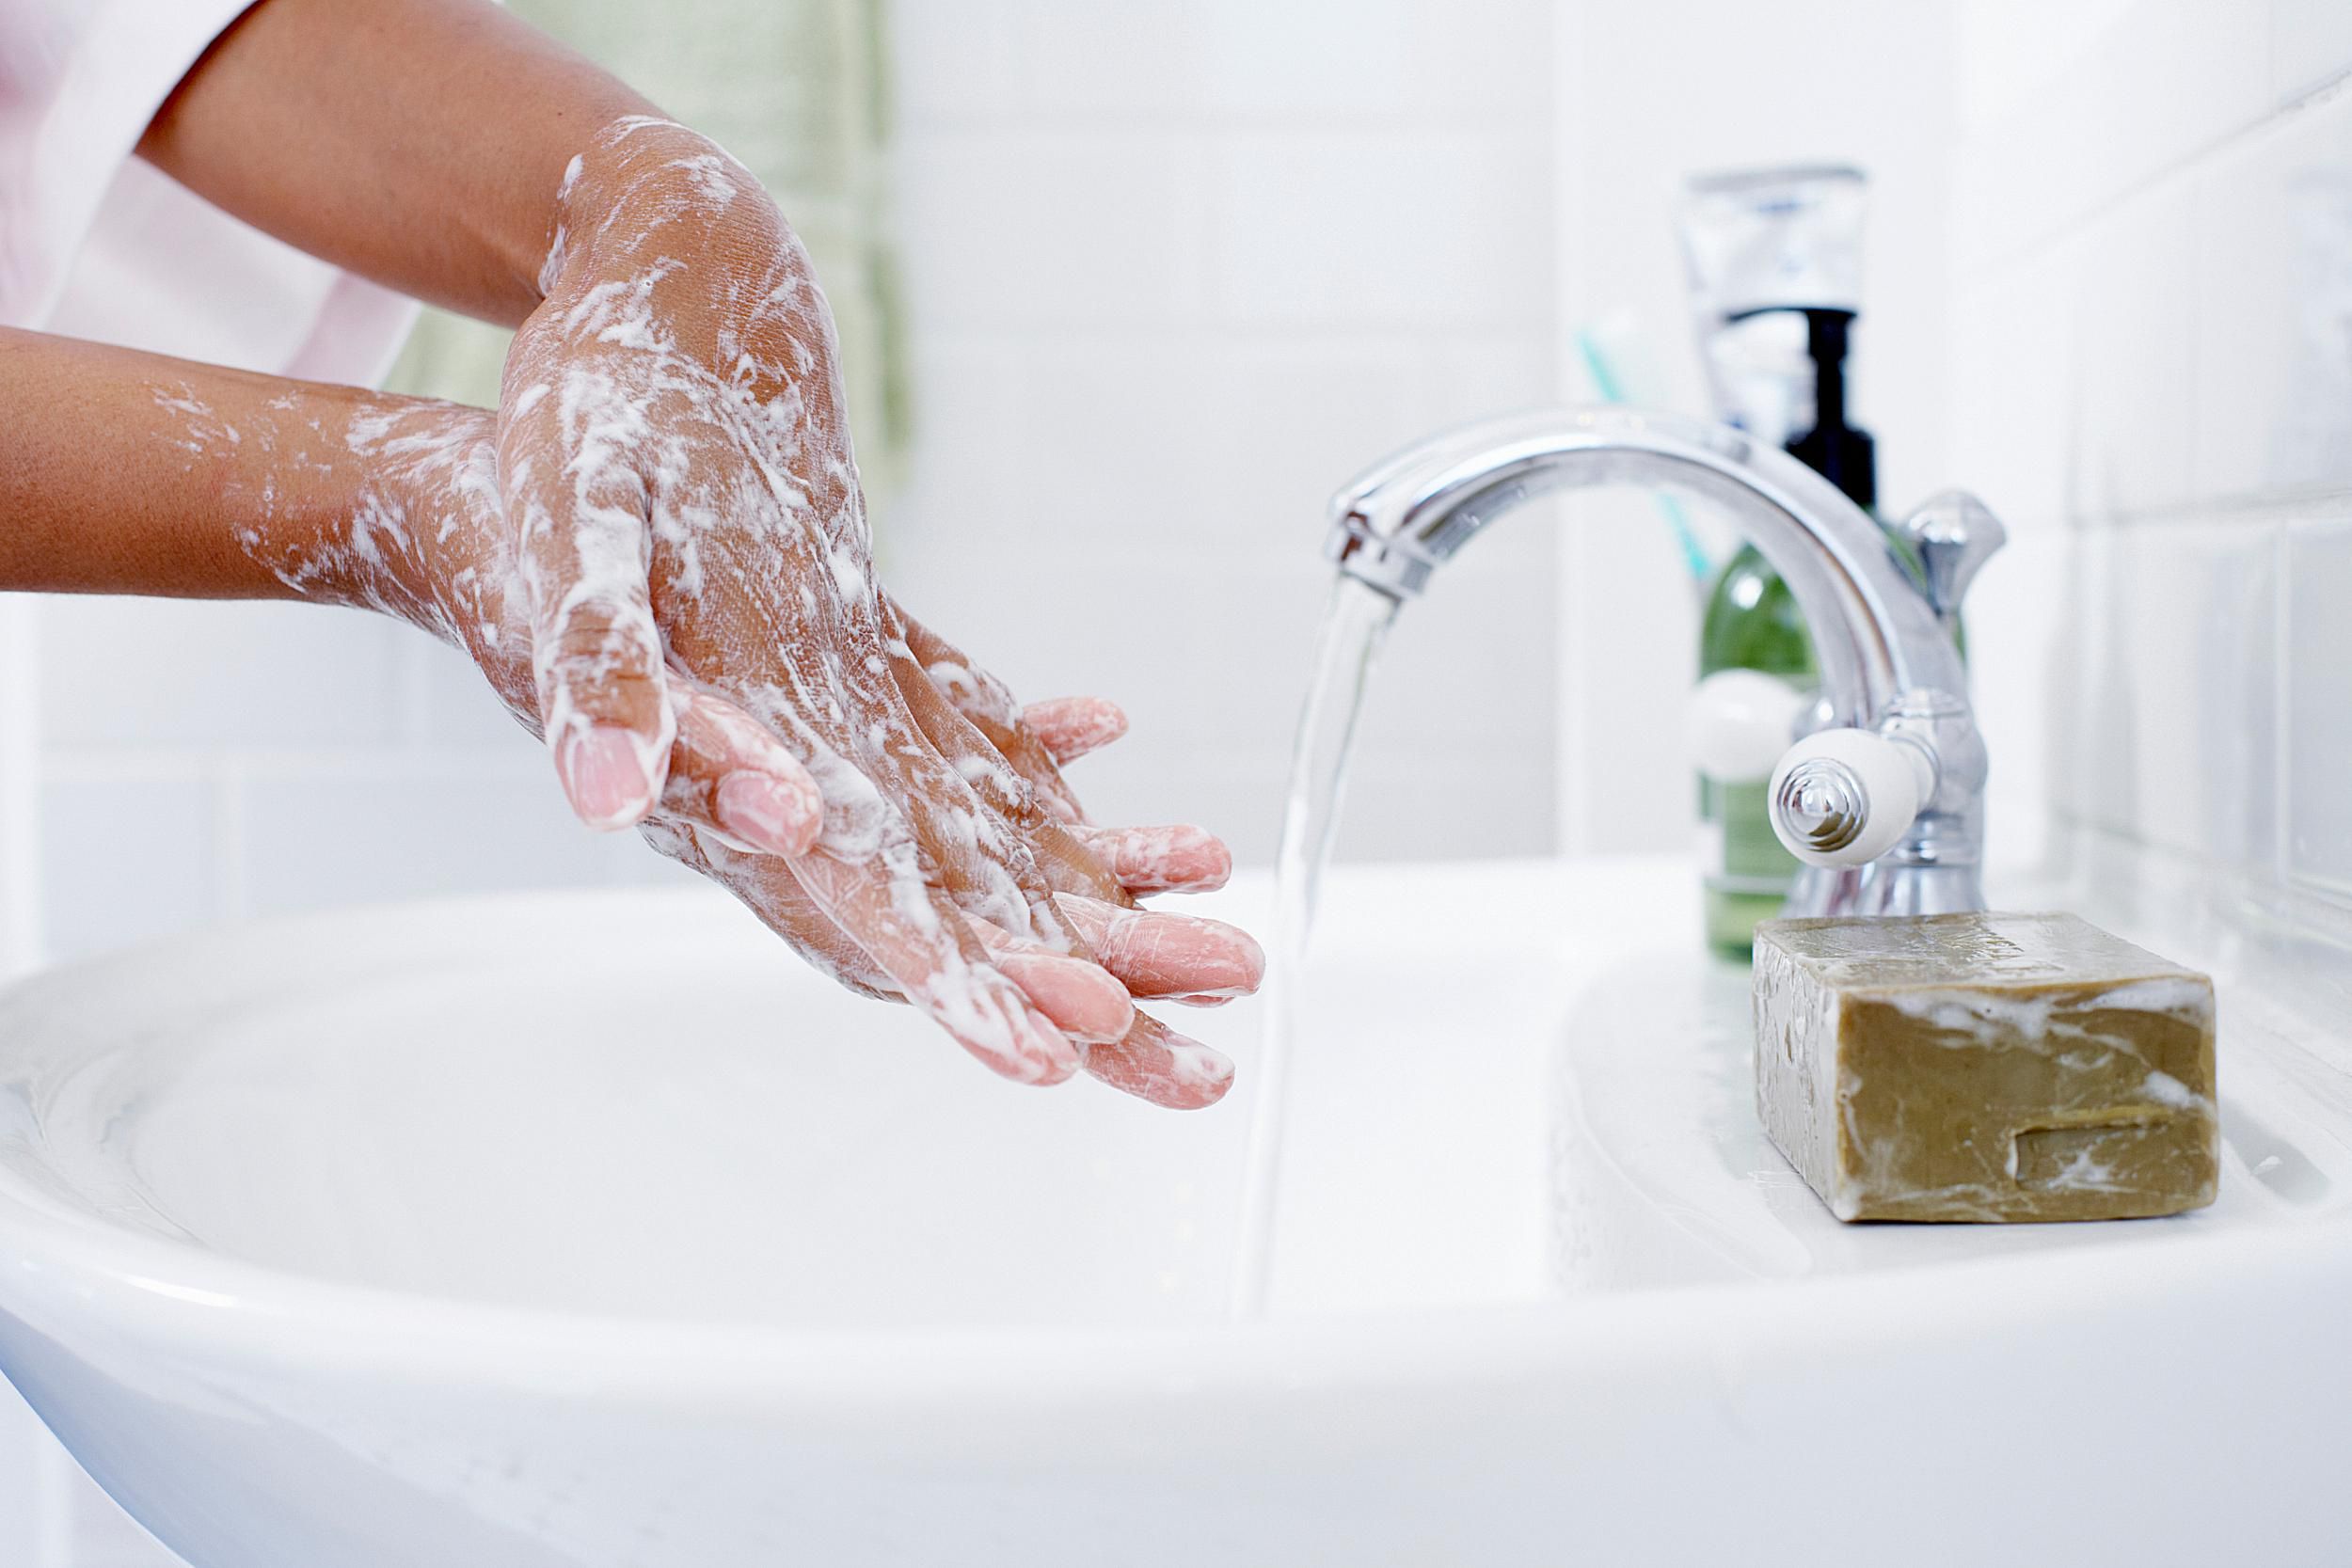 تفسير حلم غسل اليدين بالصابون للعزباء